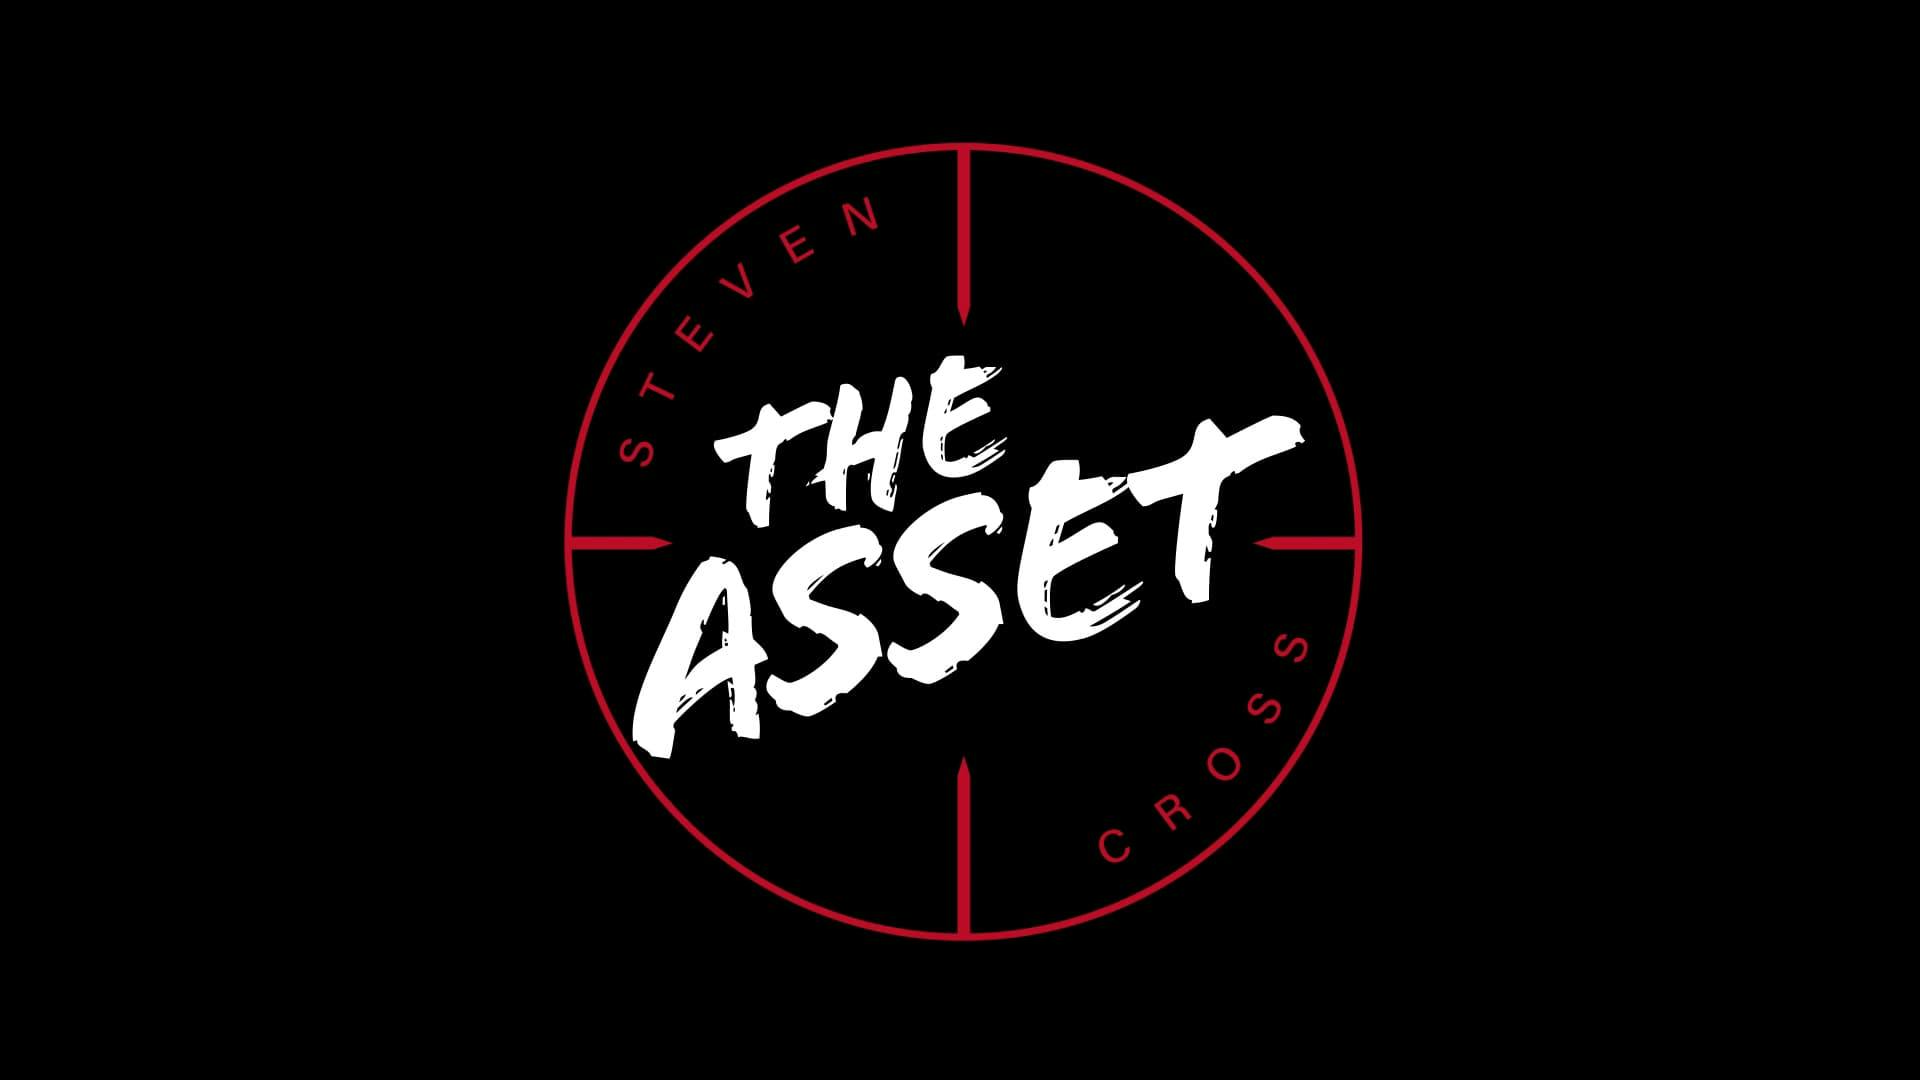 The logo for wrestler the Asset Steven Cross. The logo sits inside a giant sniper scope.